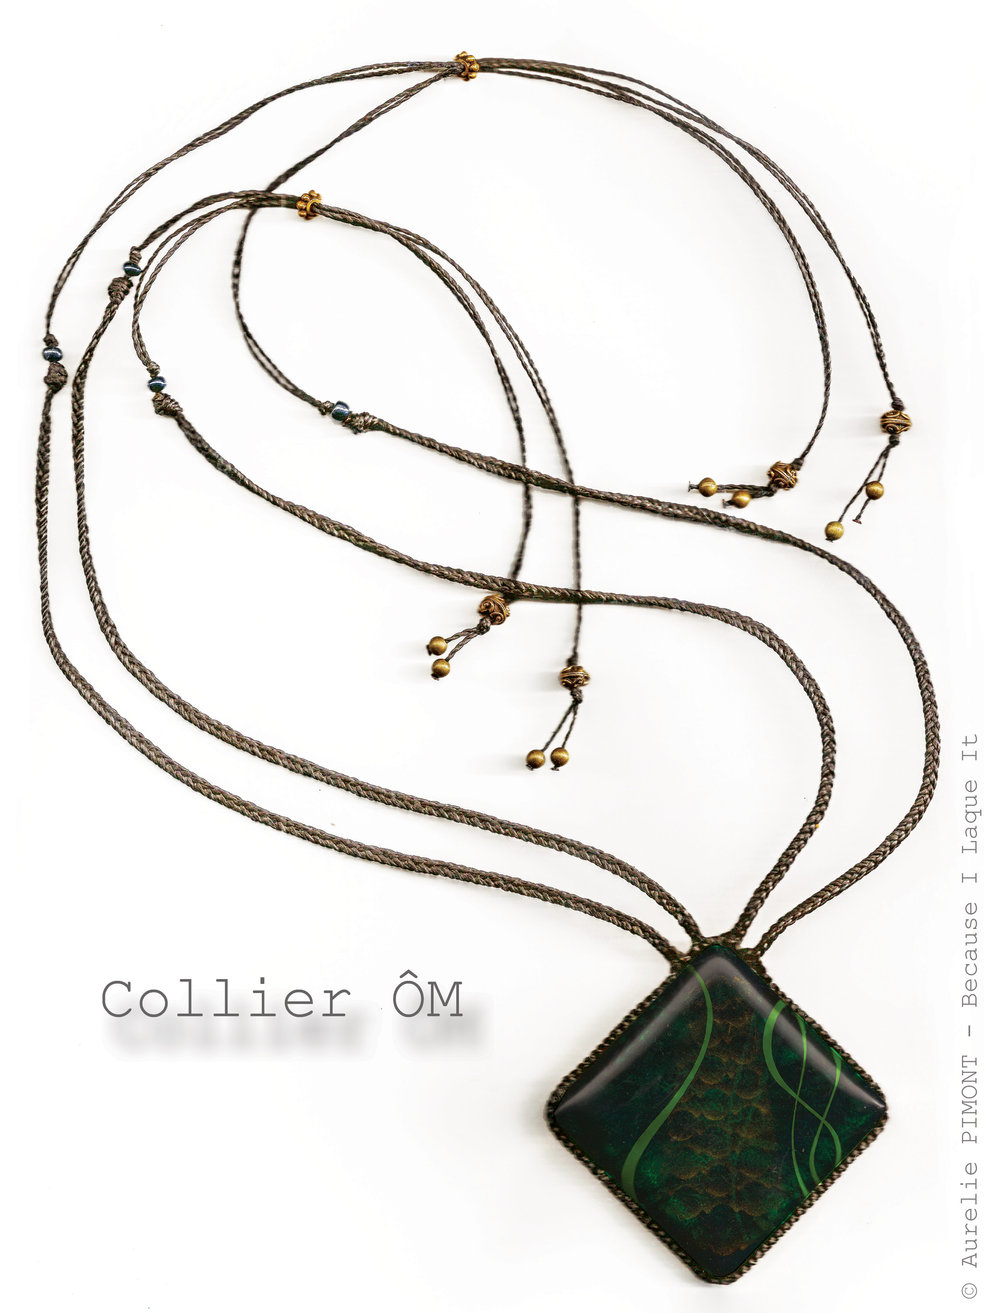 Collier ÔM<br/><span>Dimensions du carré : 5X5
Longueur du collier réglable : collier classique ou sautoir
Perles en métal couleur bronze/or vieilli</span>